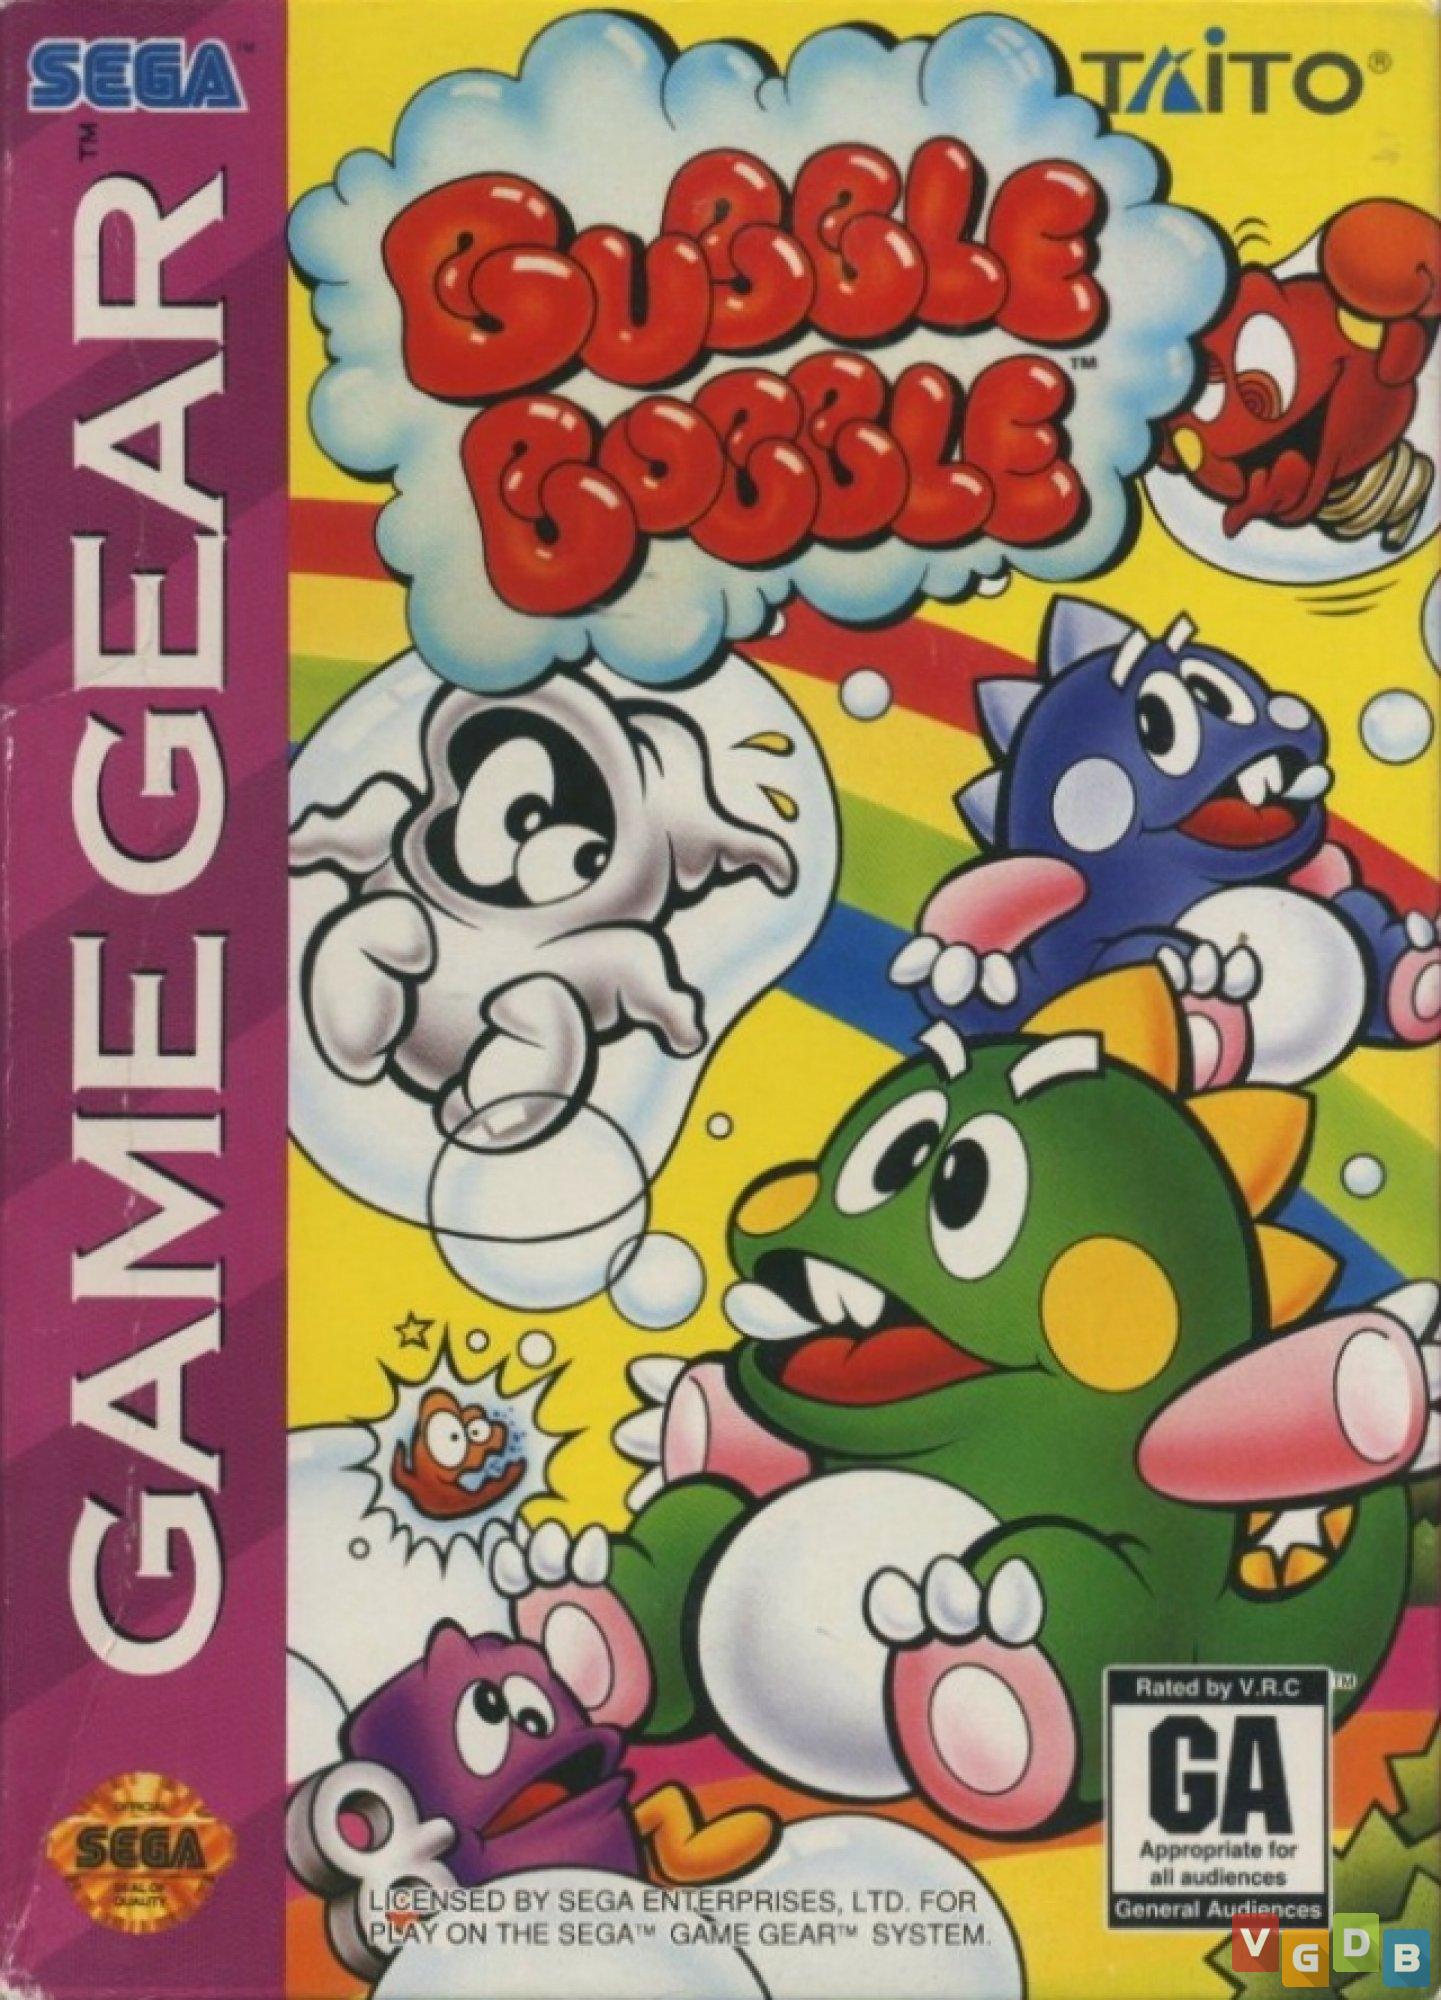 Bubble Bobble (cancelado) - VGDB - Vídeo Game Data Base